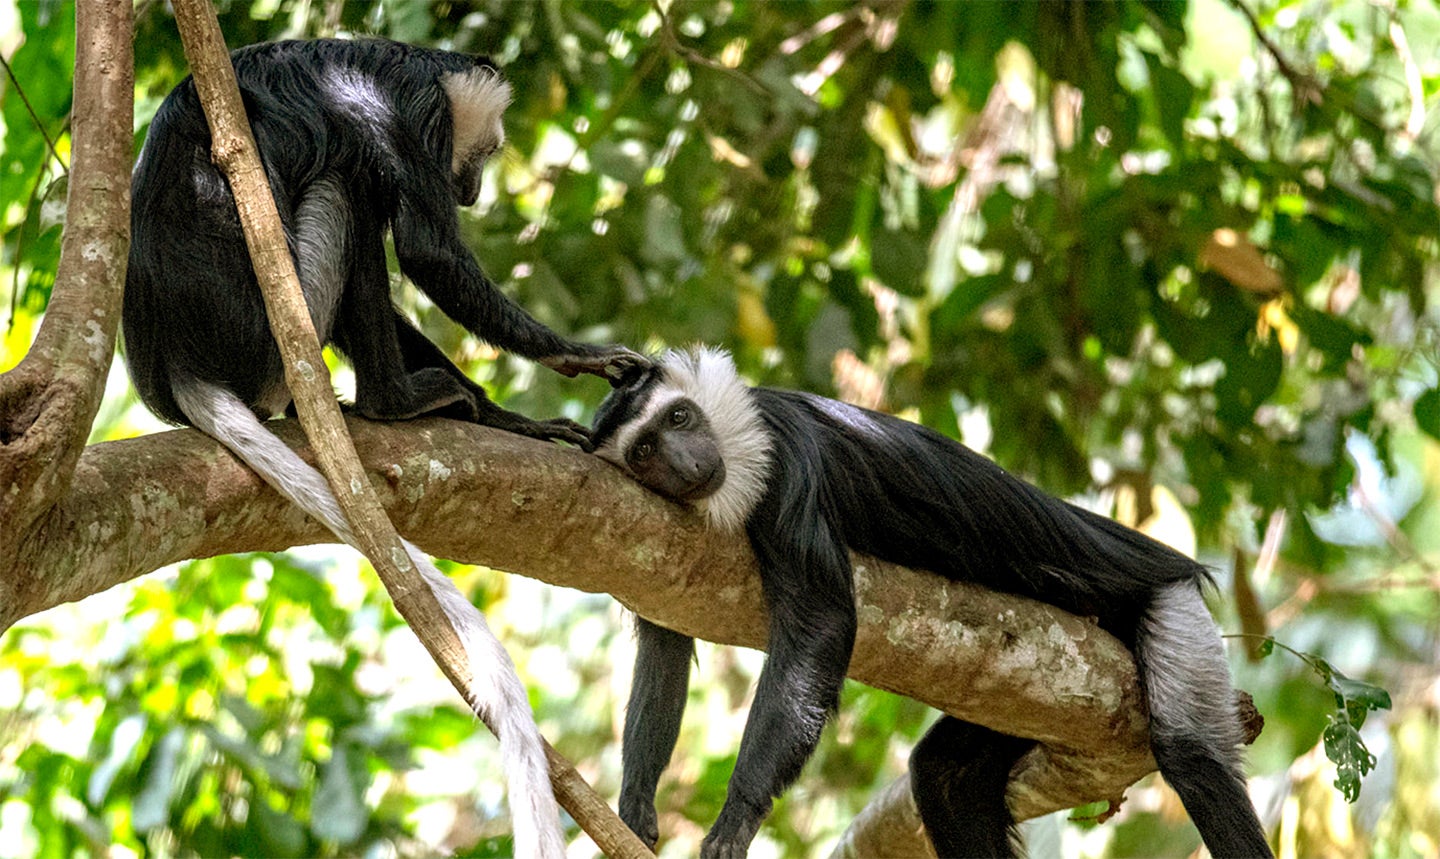 Coobus monkeys grooming